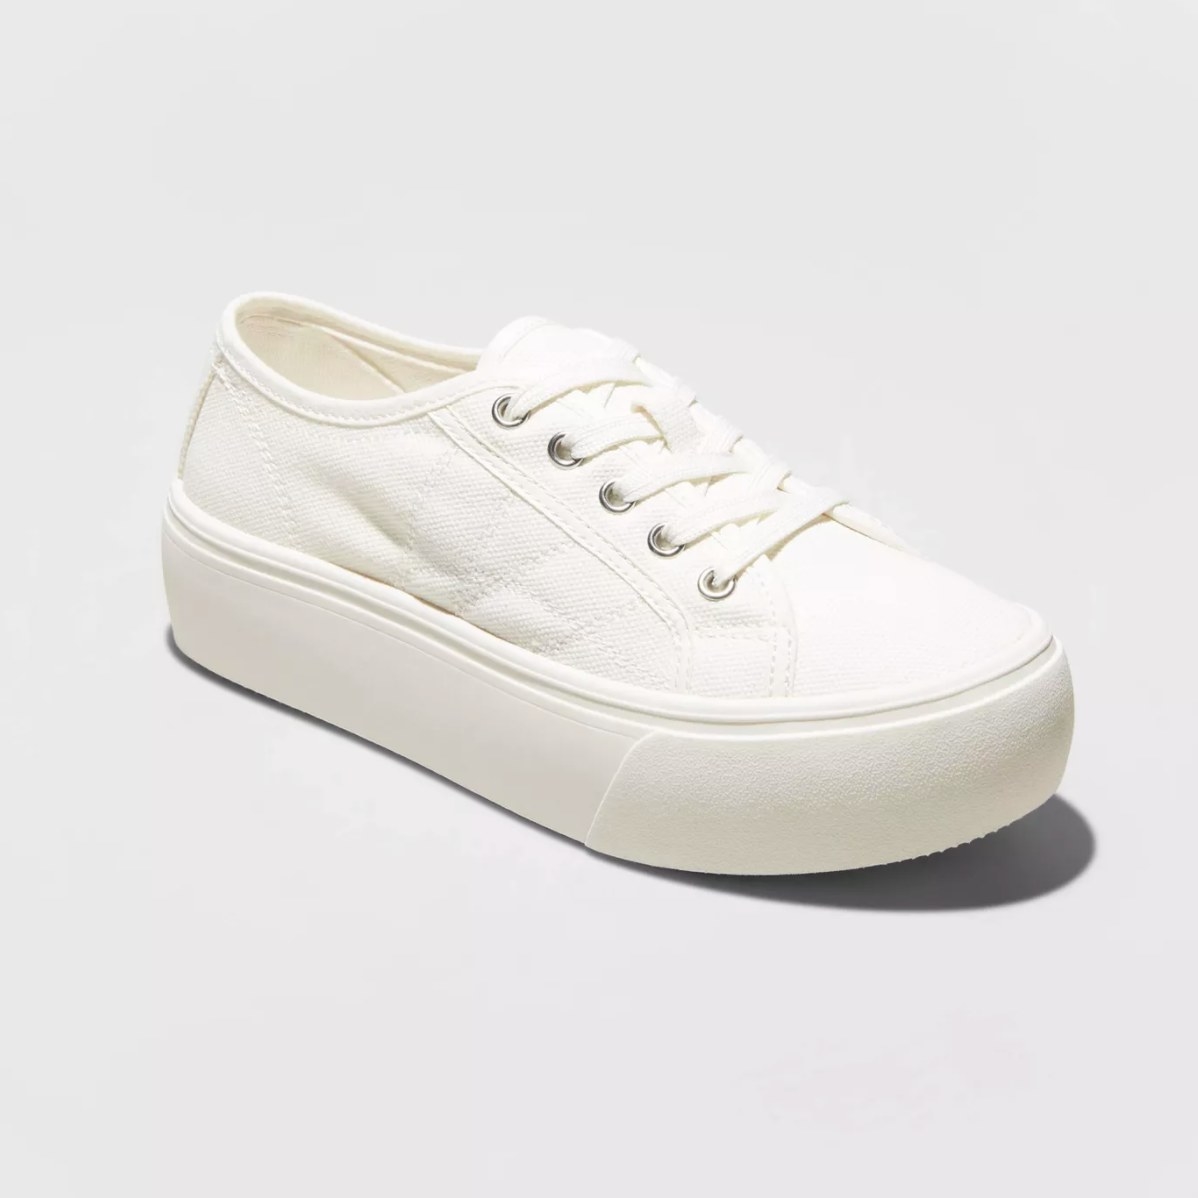 white platform sneakers target